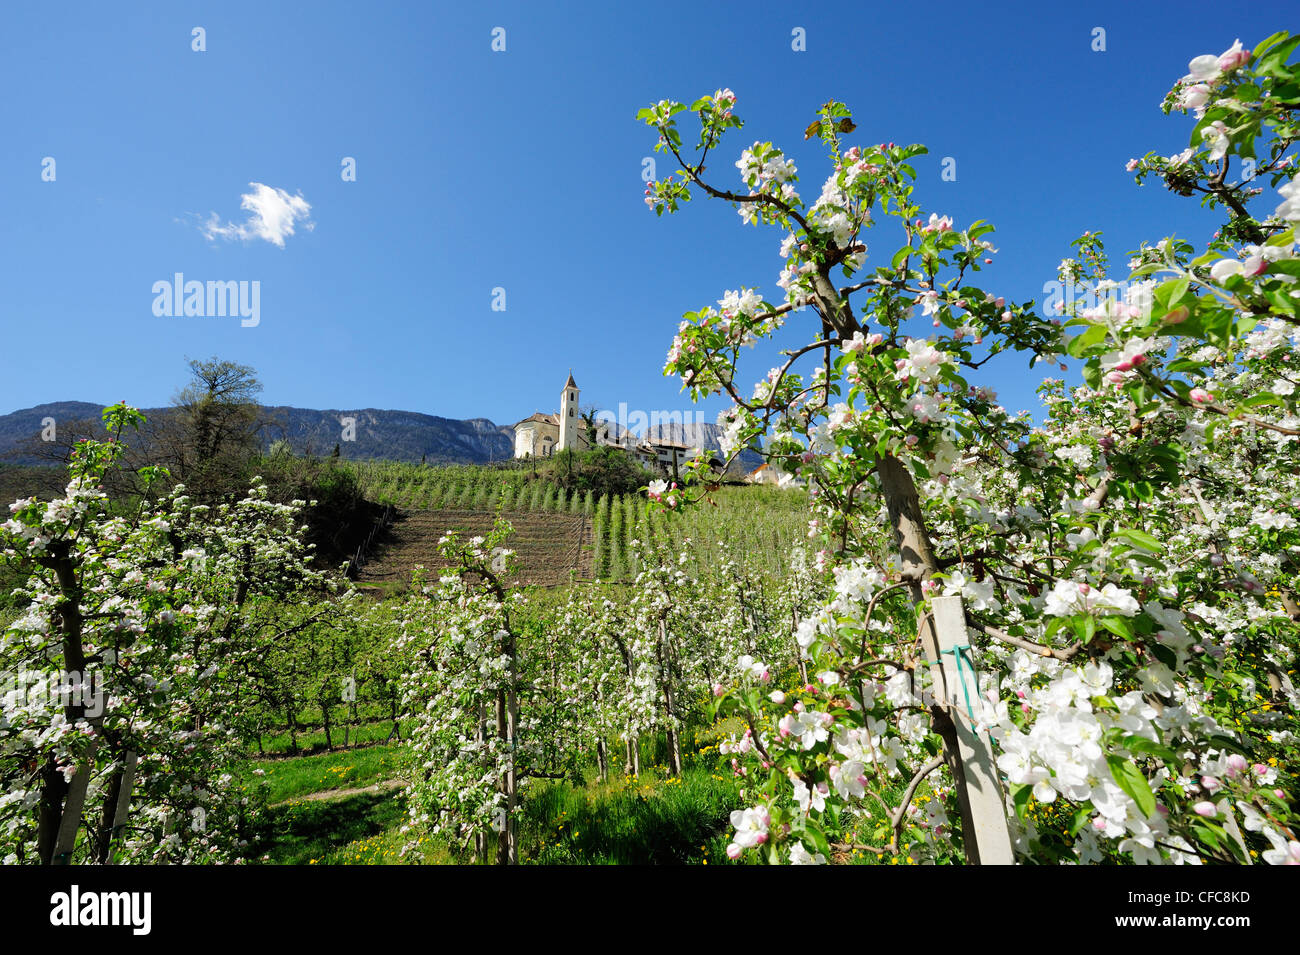 Righe di meli in fiore e il villaggio con una chiesa in background, Appiano, Merano, Alto Adige, Italia, Europa Foto Stock